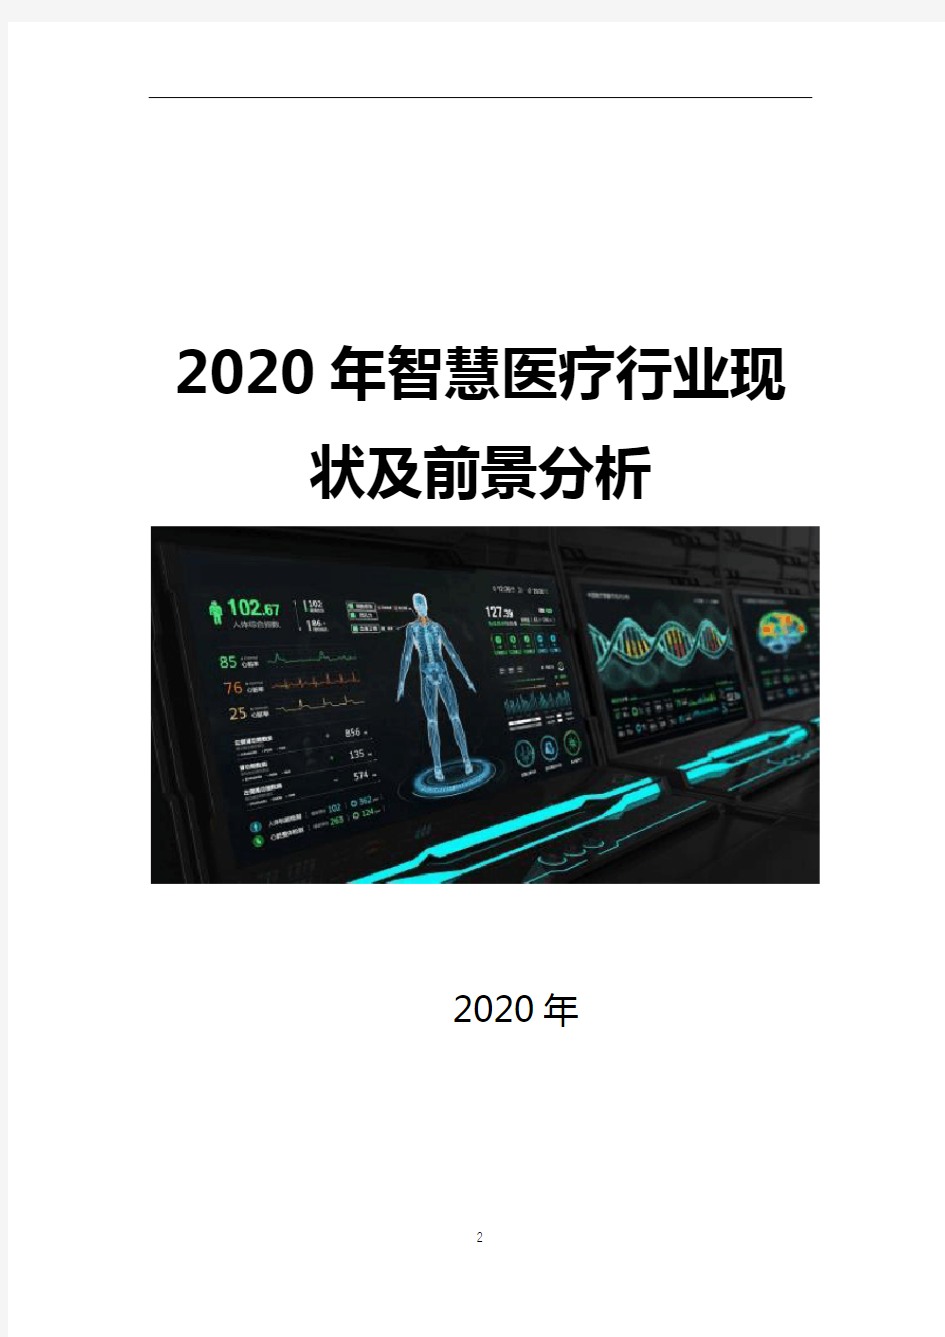 2020年智慧医疗行业现状及前景分析